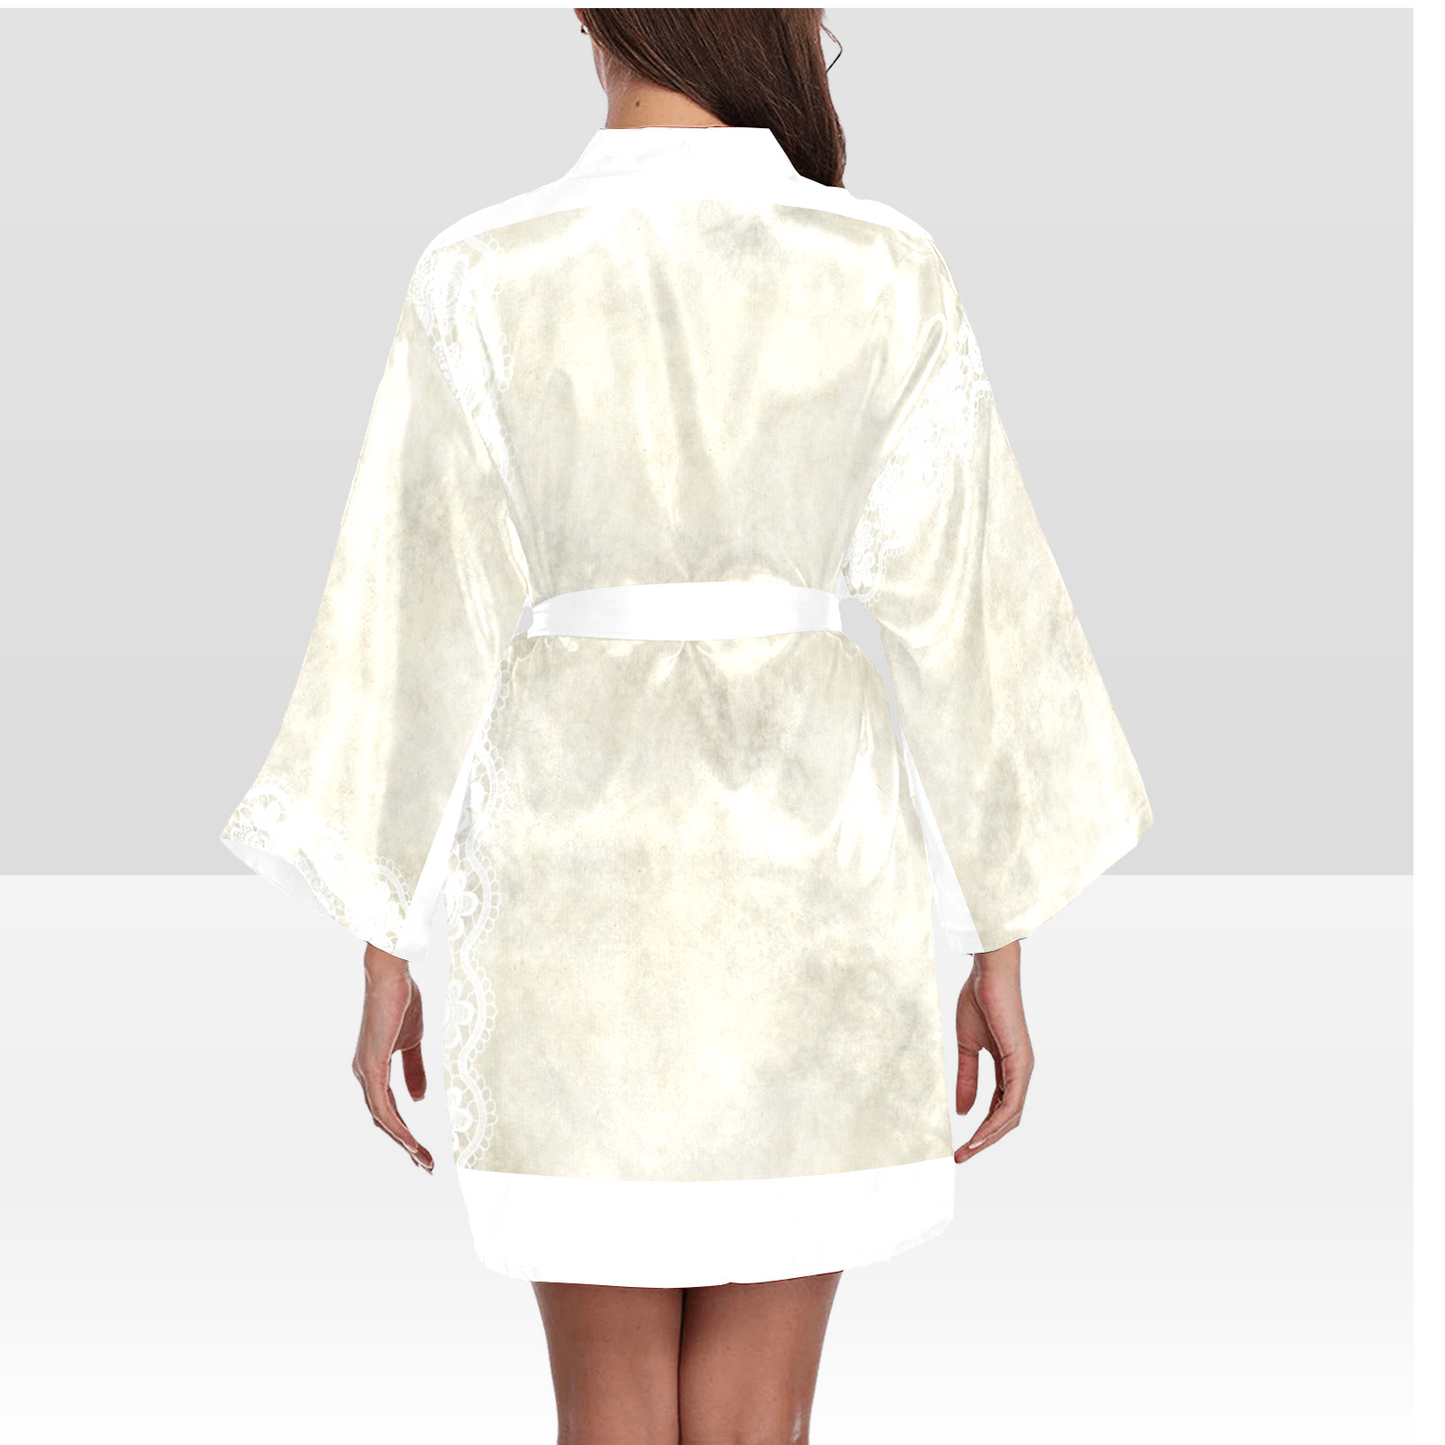 Victorian Lace Kimono Robe, Black or White Trim, Sizes XS to 2XL, Design 27